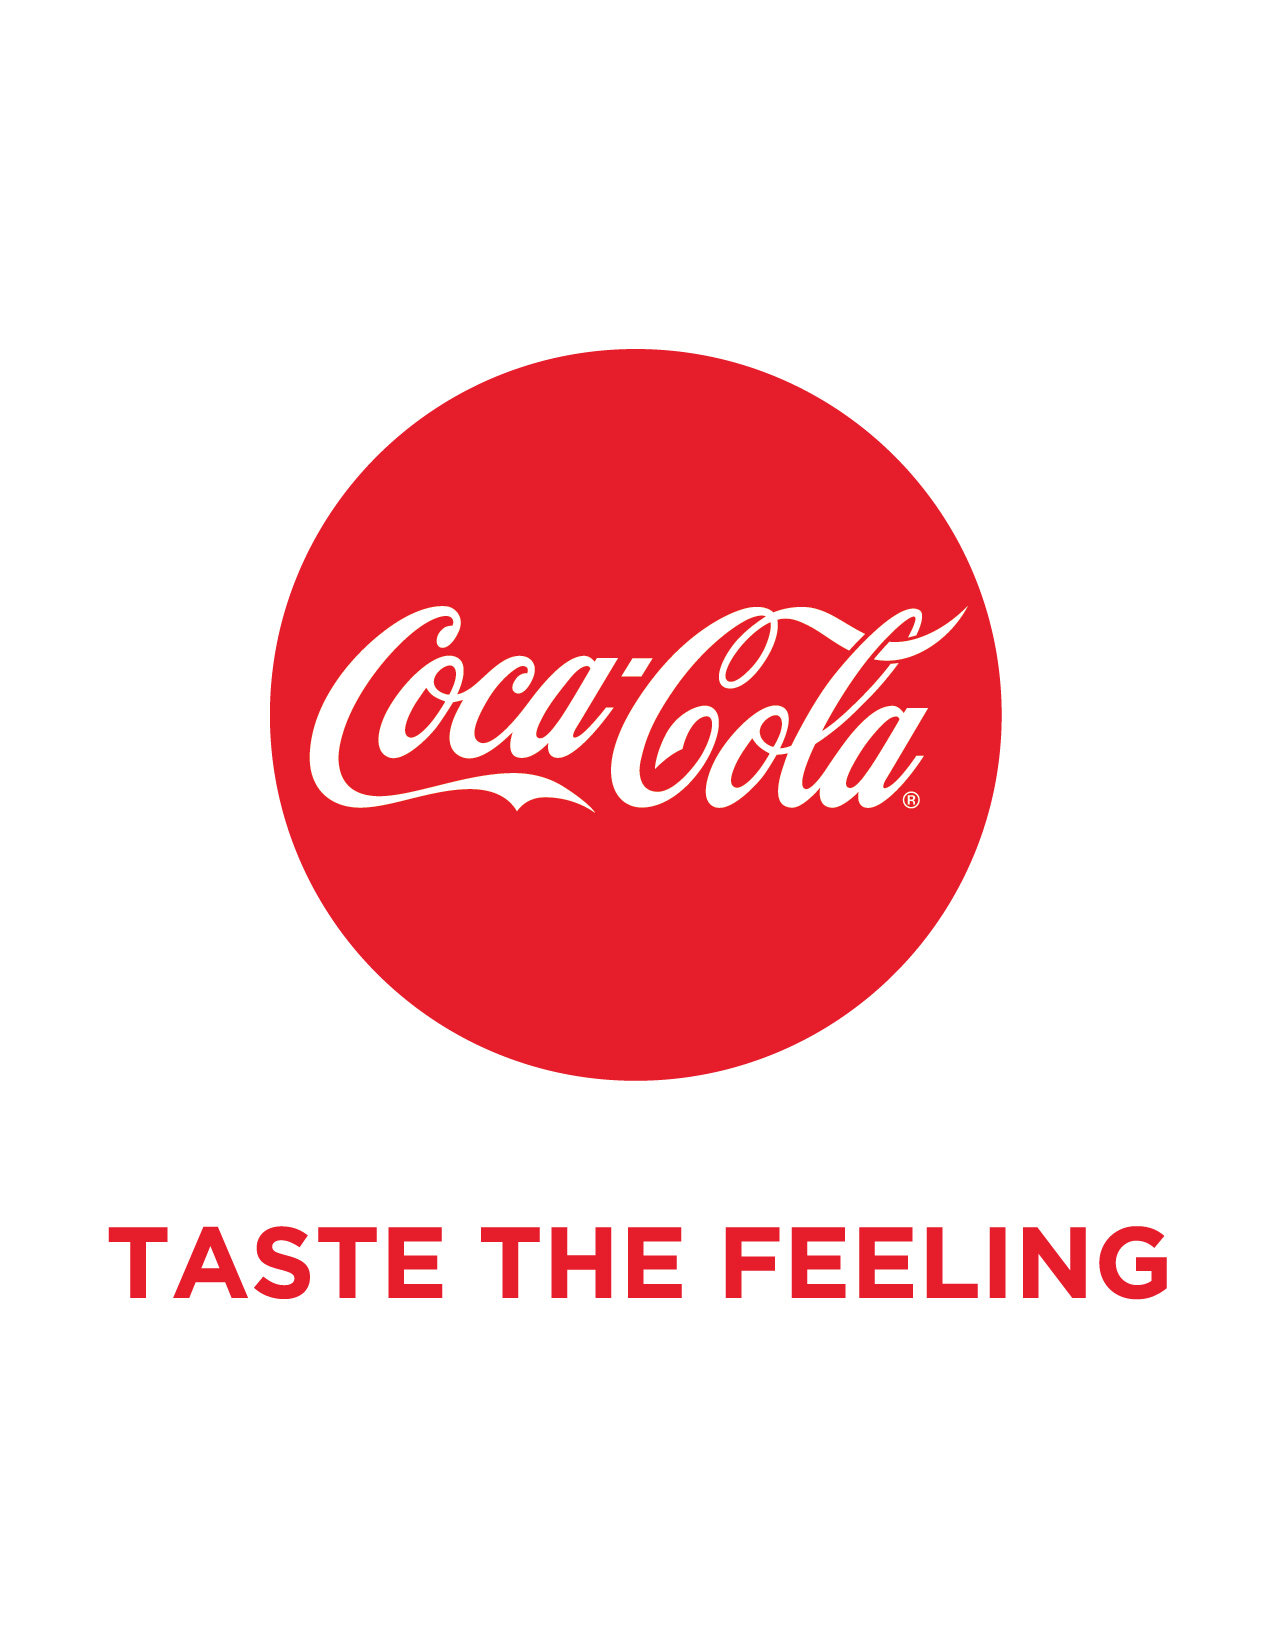 Taste the feeling. Coca Cola эмблема. Кока кола слоган. The Coca-Cola Company логотип. Кока кола логотип на прозрачном фоне.